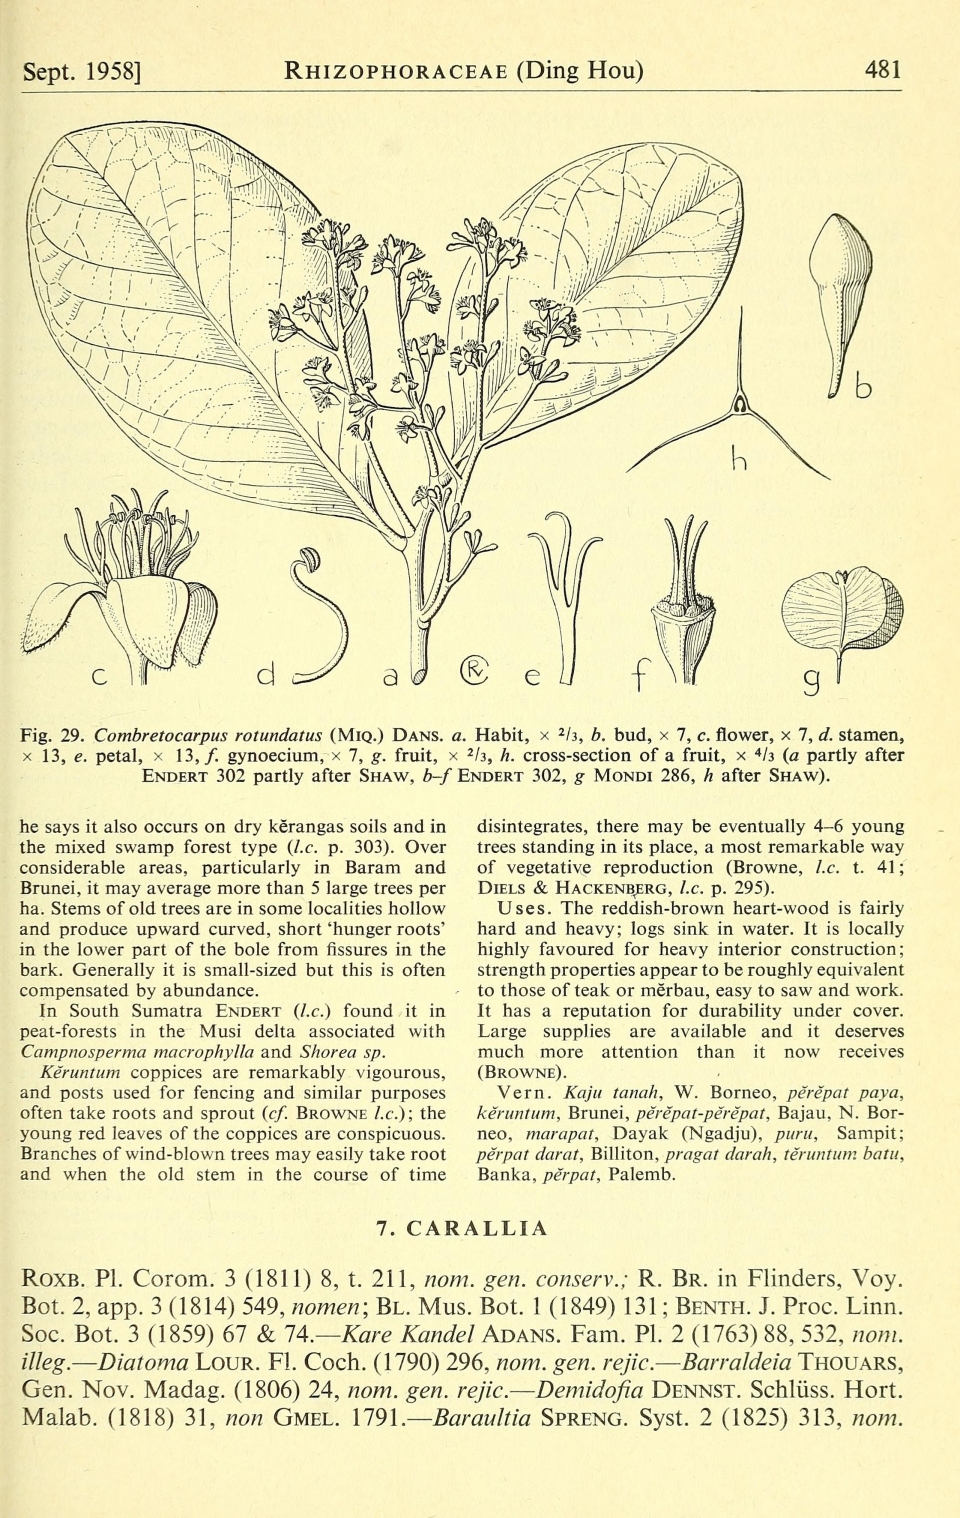 Combretocarpus rotundatus